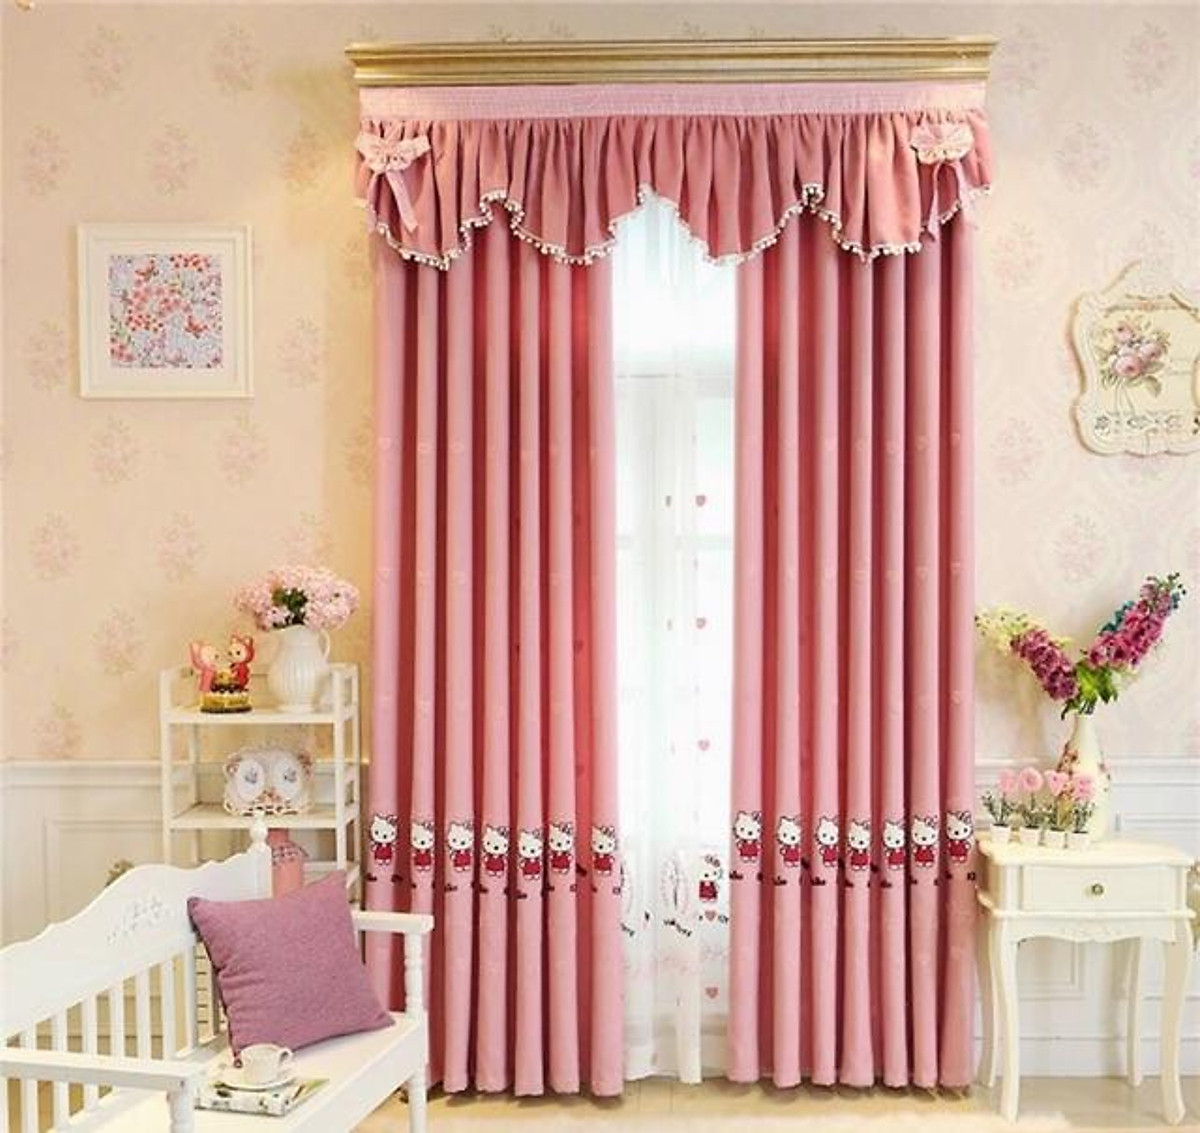 Rèm Thêu Kitty xinh xắn, rèm cửa màu hồng trang trí phòng ngủ trẻ em - Cao cố định 2.5m